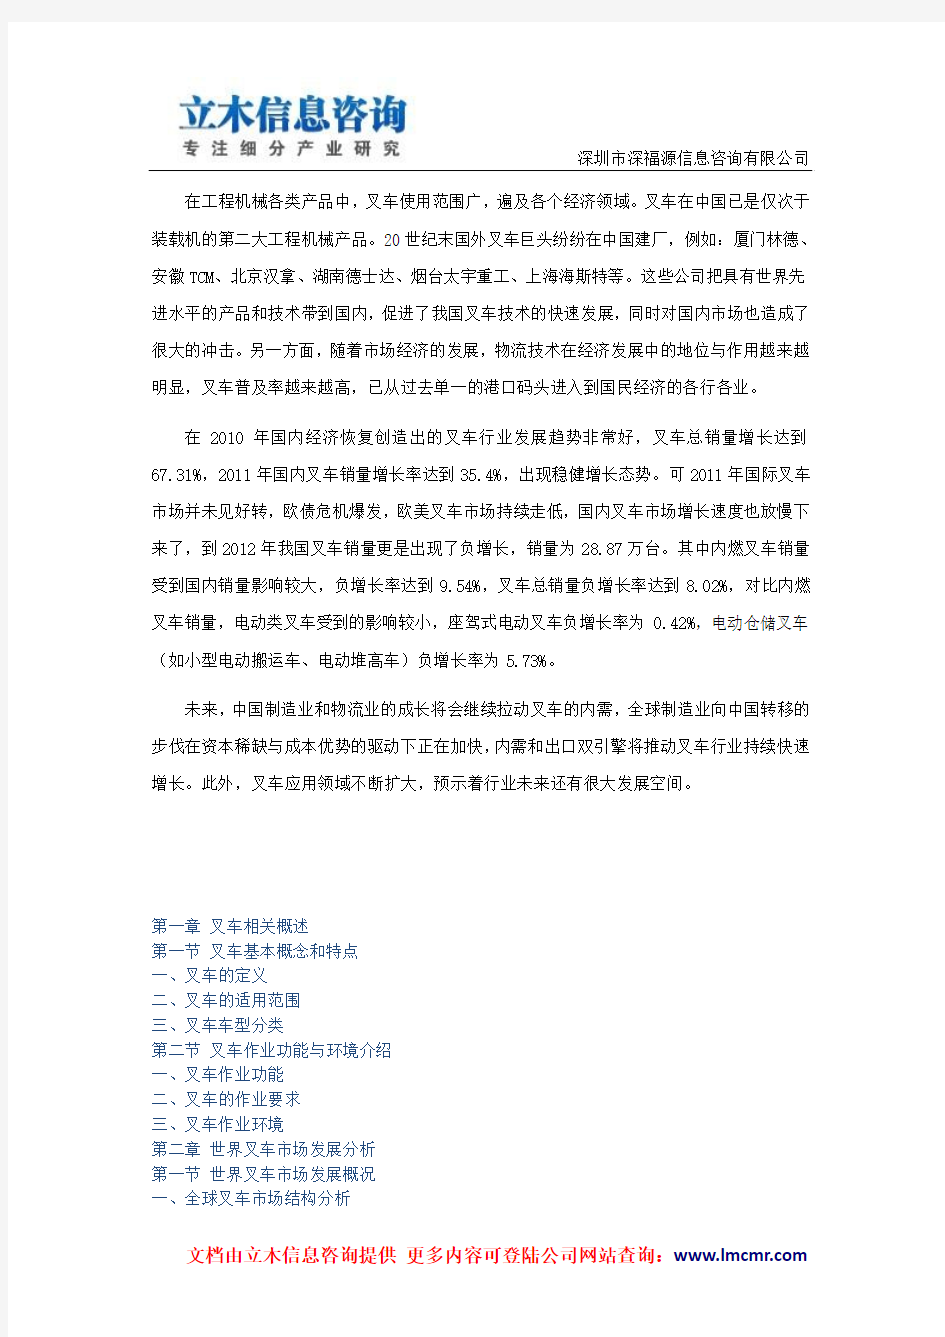 中国叉车行业市场深度调研报告(2014版)